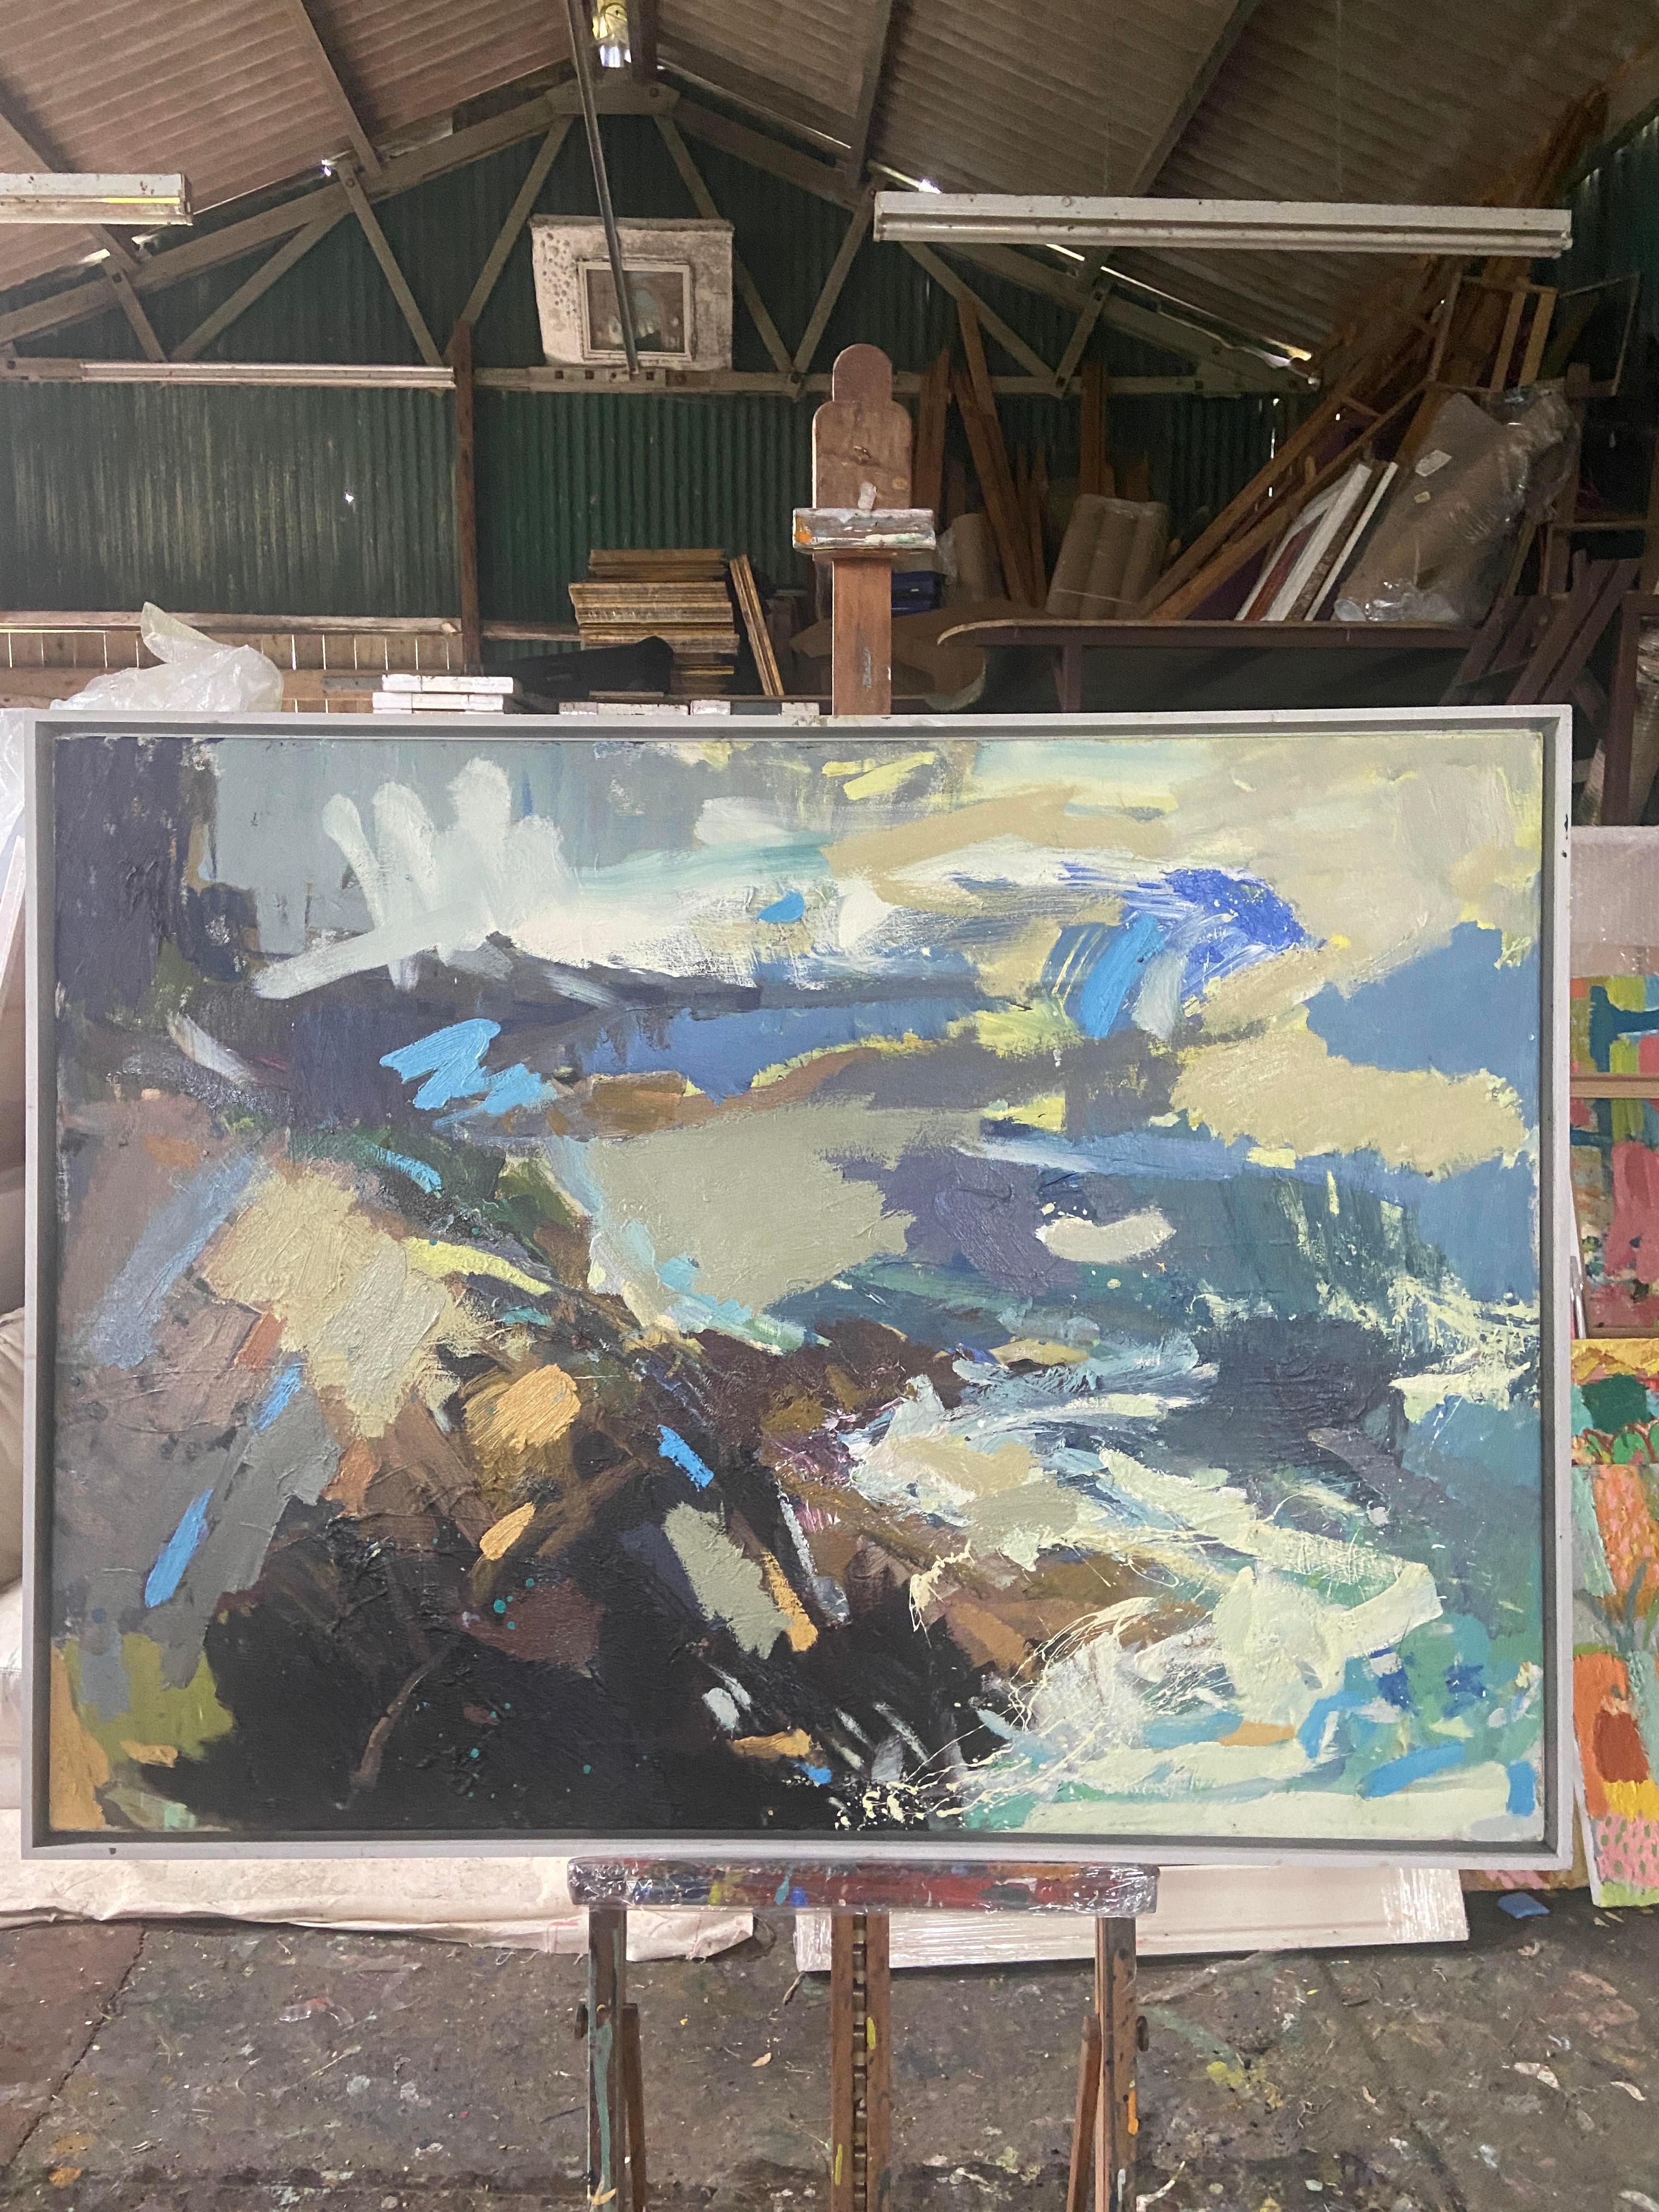 St. Ives Bay, Cornwall. England.

Paul Wadsworth ist einer der führenden Vertreter der expressionistischen Malerei in Großbritannien. Seine Werke sind mit reichlich aufgetragenen Farbschichten versehen, und das Ergebnis sind Gemälde, die von der